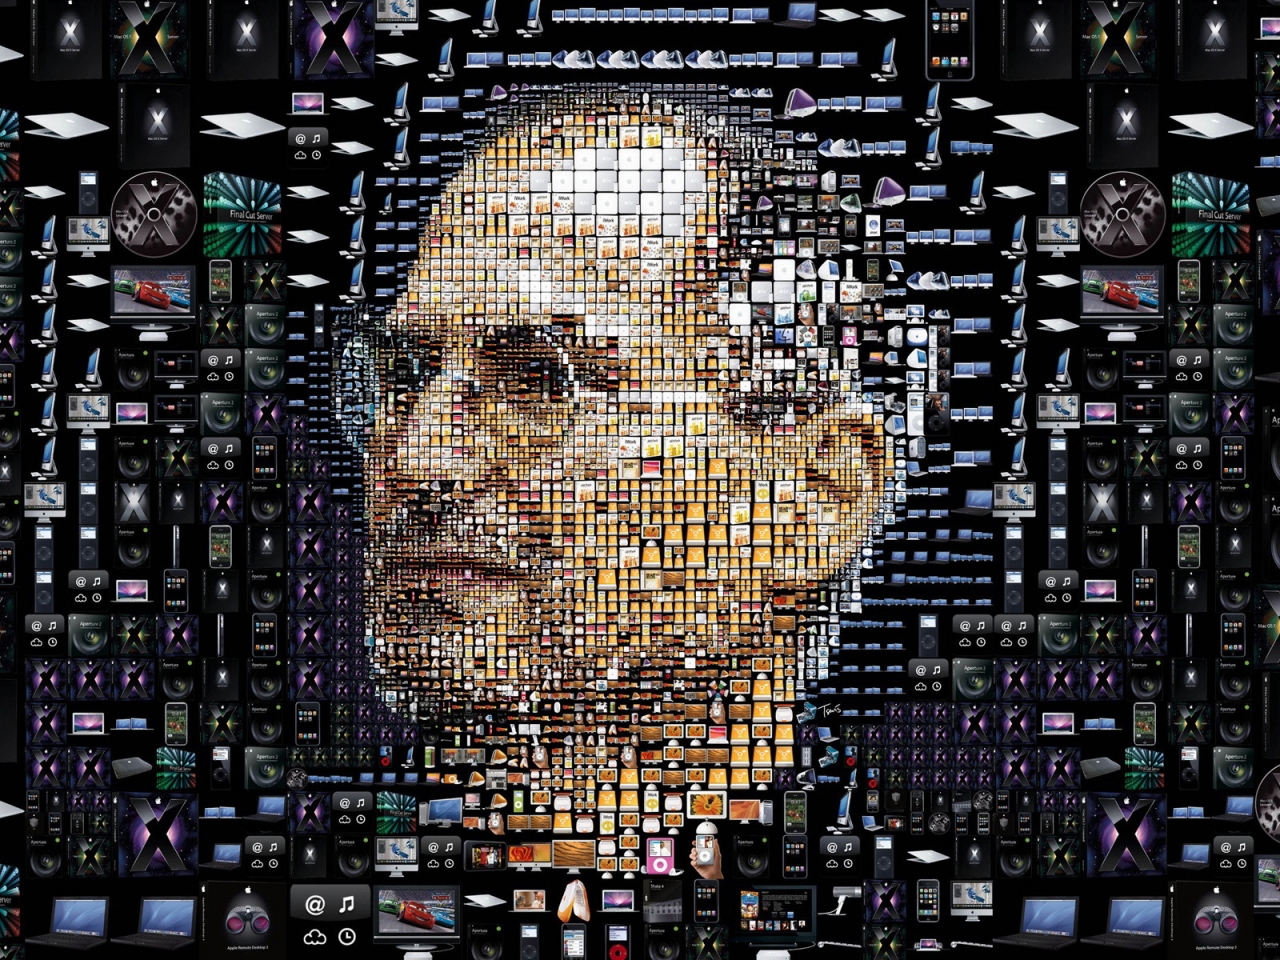 Steve Jobs for 1280 x 960 resolution